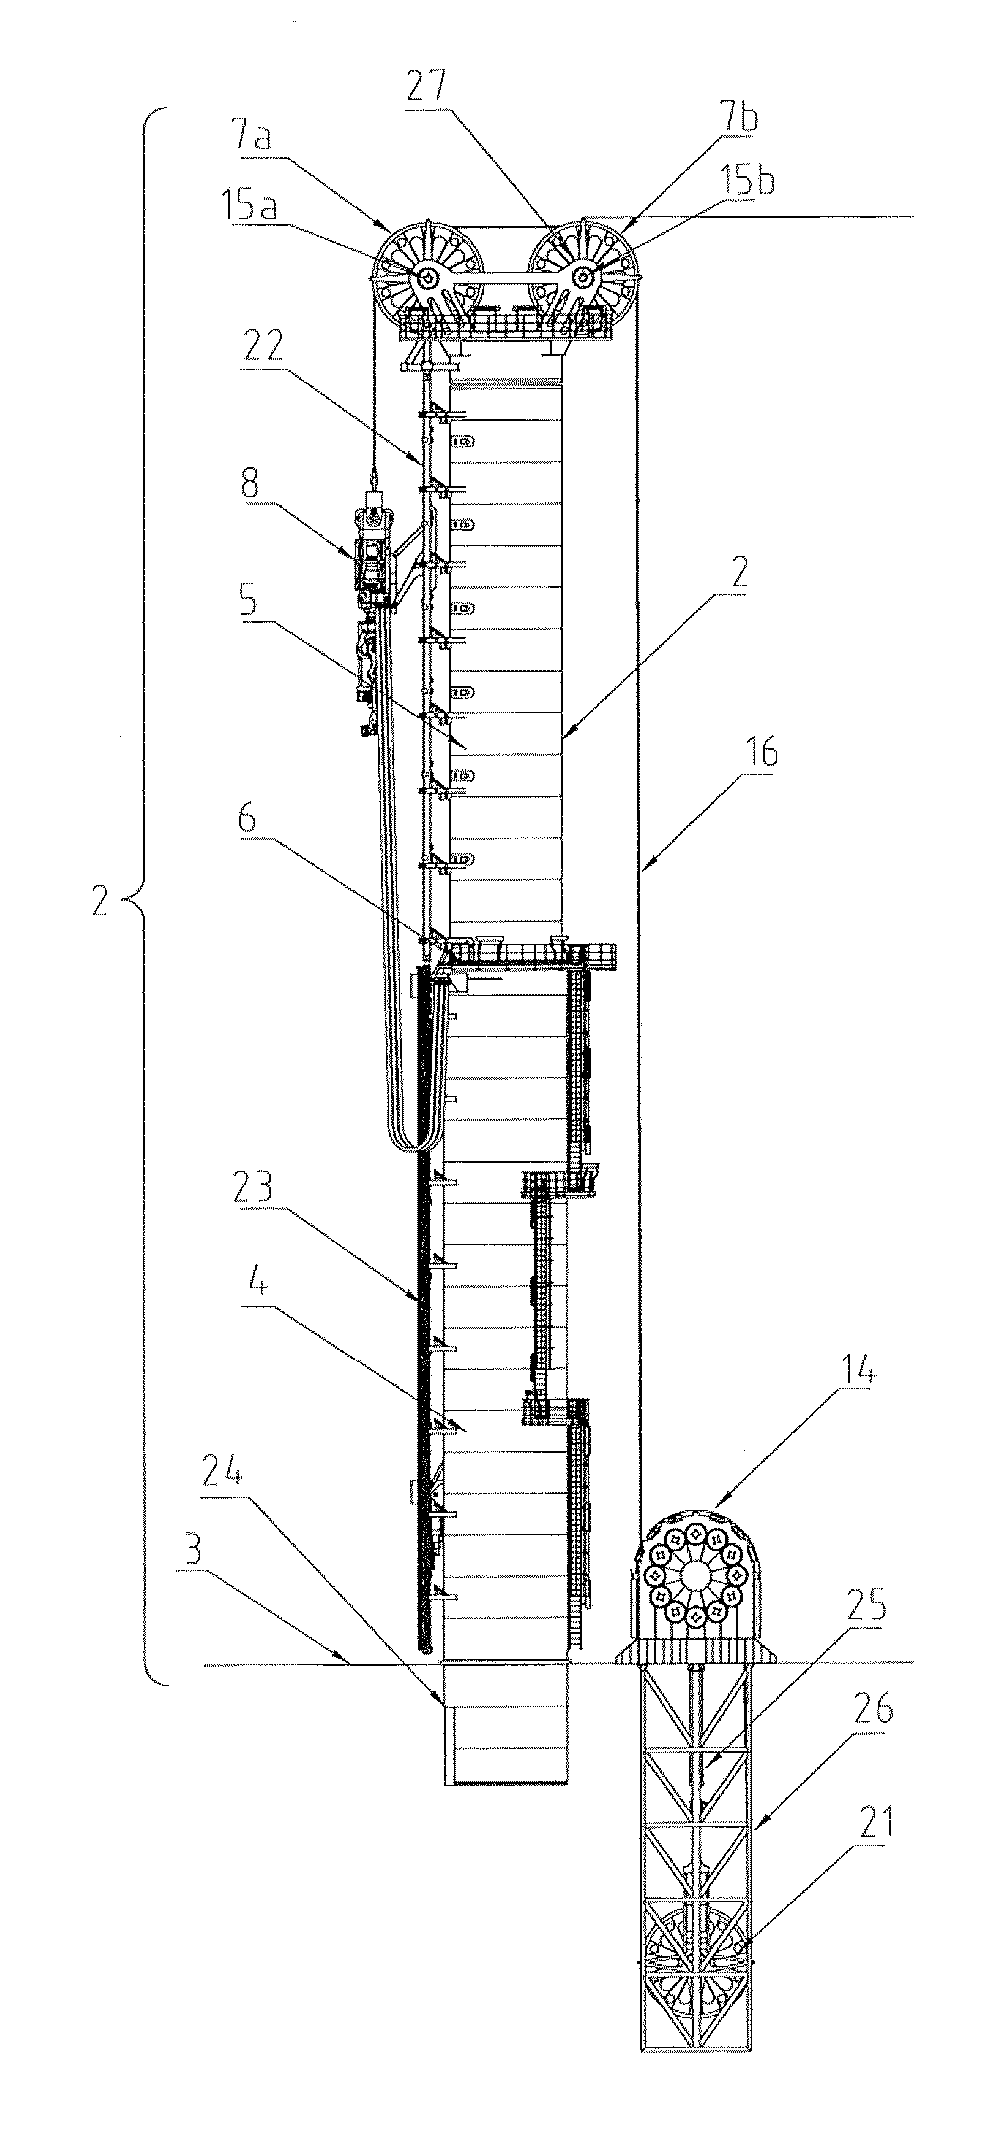 Drilling rig arrangement